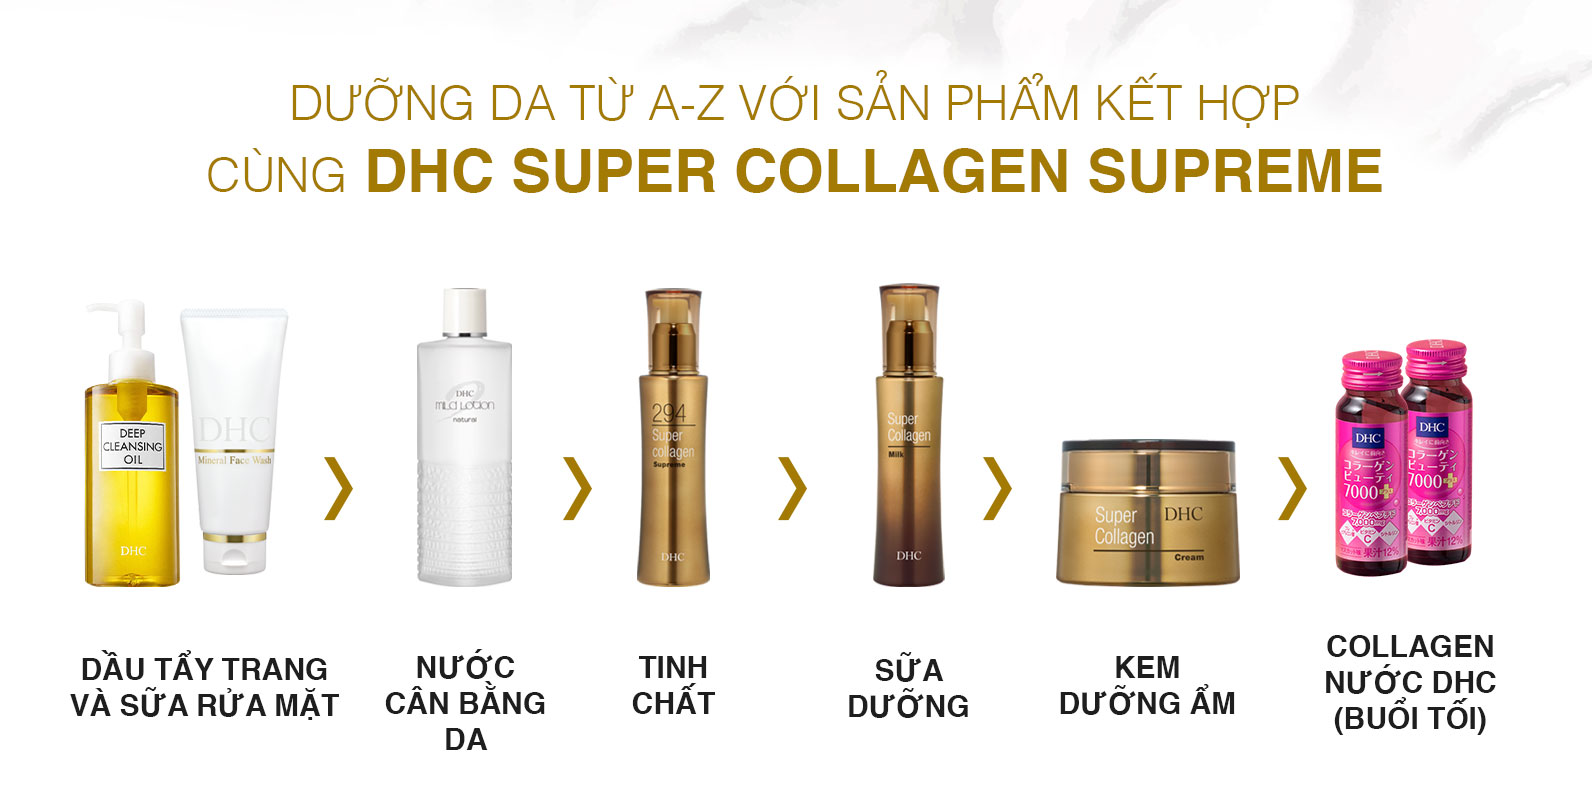 Cách dùng tinh chất siêu collagen 294 DHC